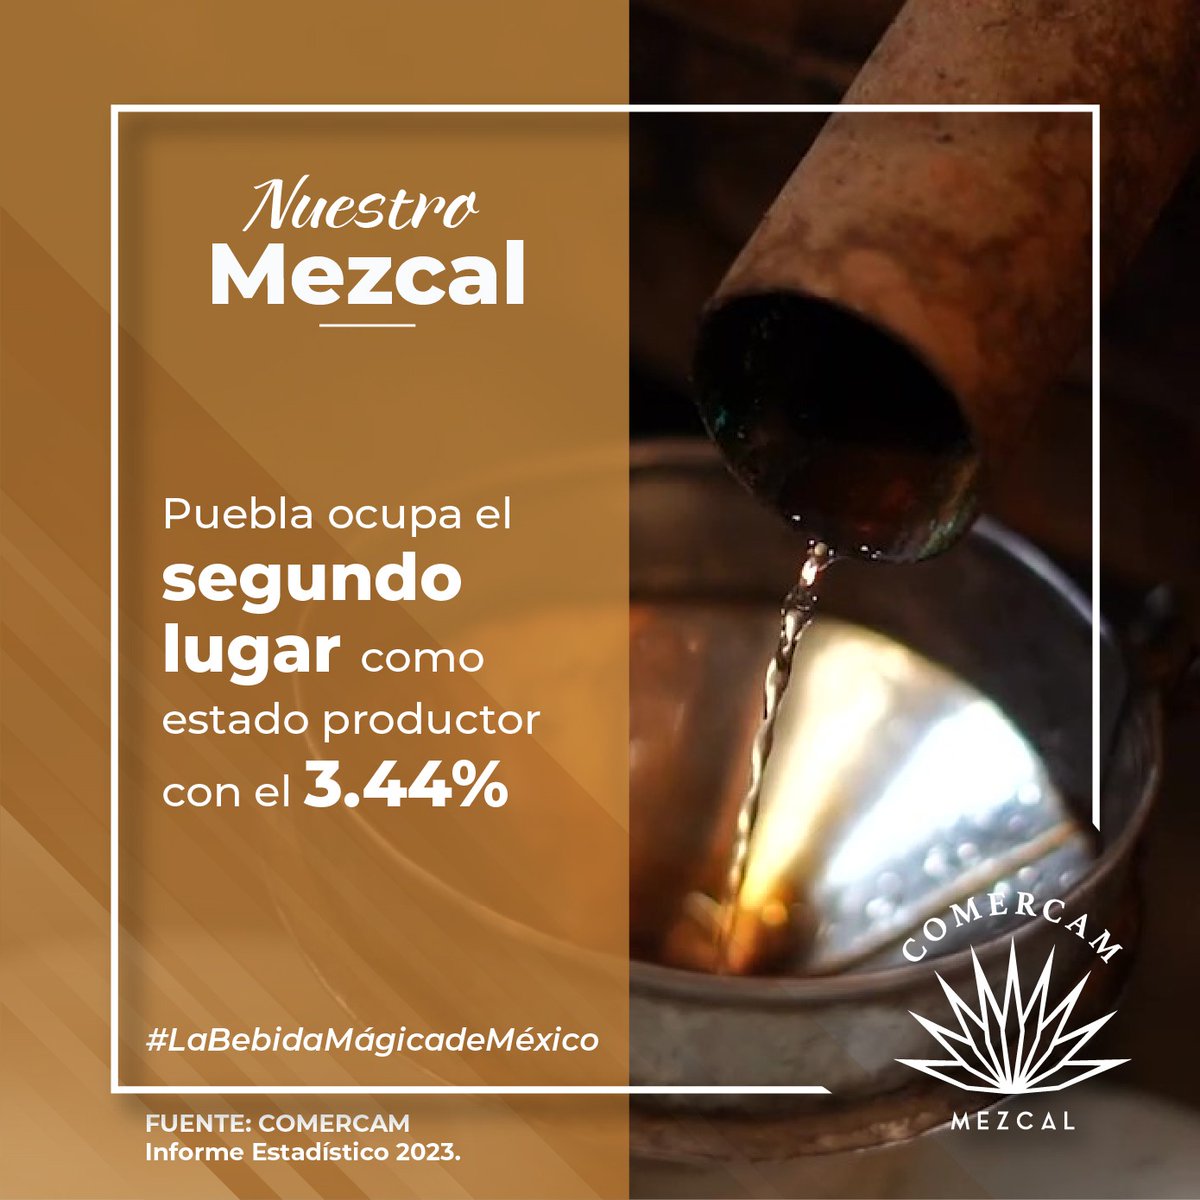 𝗡𝗨𝗘𝗦𝗧𝗥𝗢 𝗠𝗘𝗭𝗖𝗔𝗟
En 2022 el estado de Puebla se situó en el segundo lugar como estado productor con el 3.44% de la producción nacional
'Mezcal: #LaBebidaMágicadeMéxico'
#Comercam #Indicadores2022 #NuestroMezcal #DenominaciónDeOrigen #Puebla #PueblaMezcal #MezcalPoblano